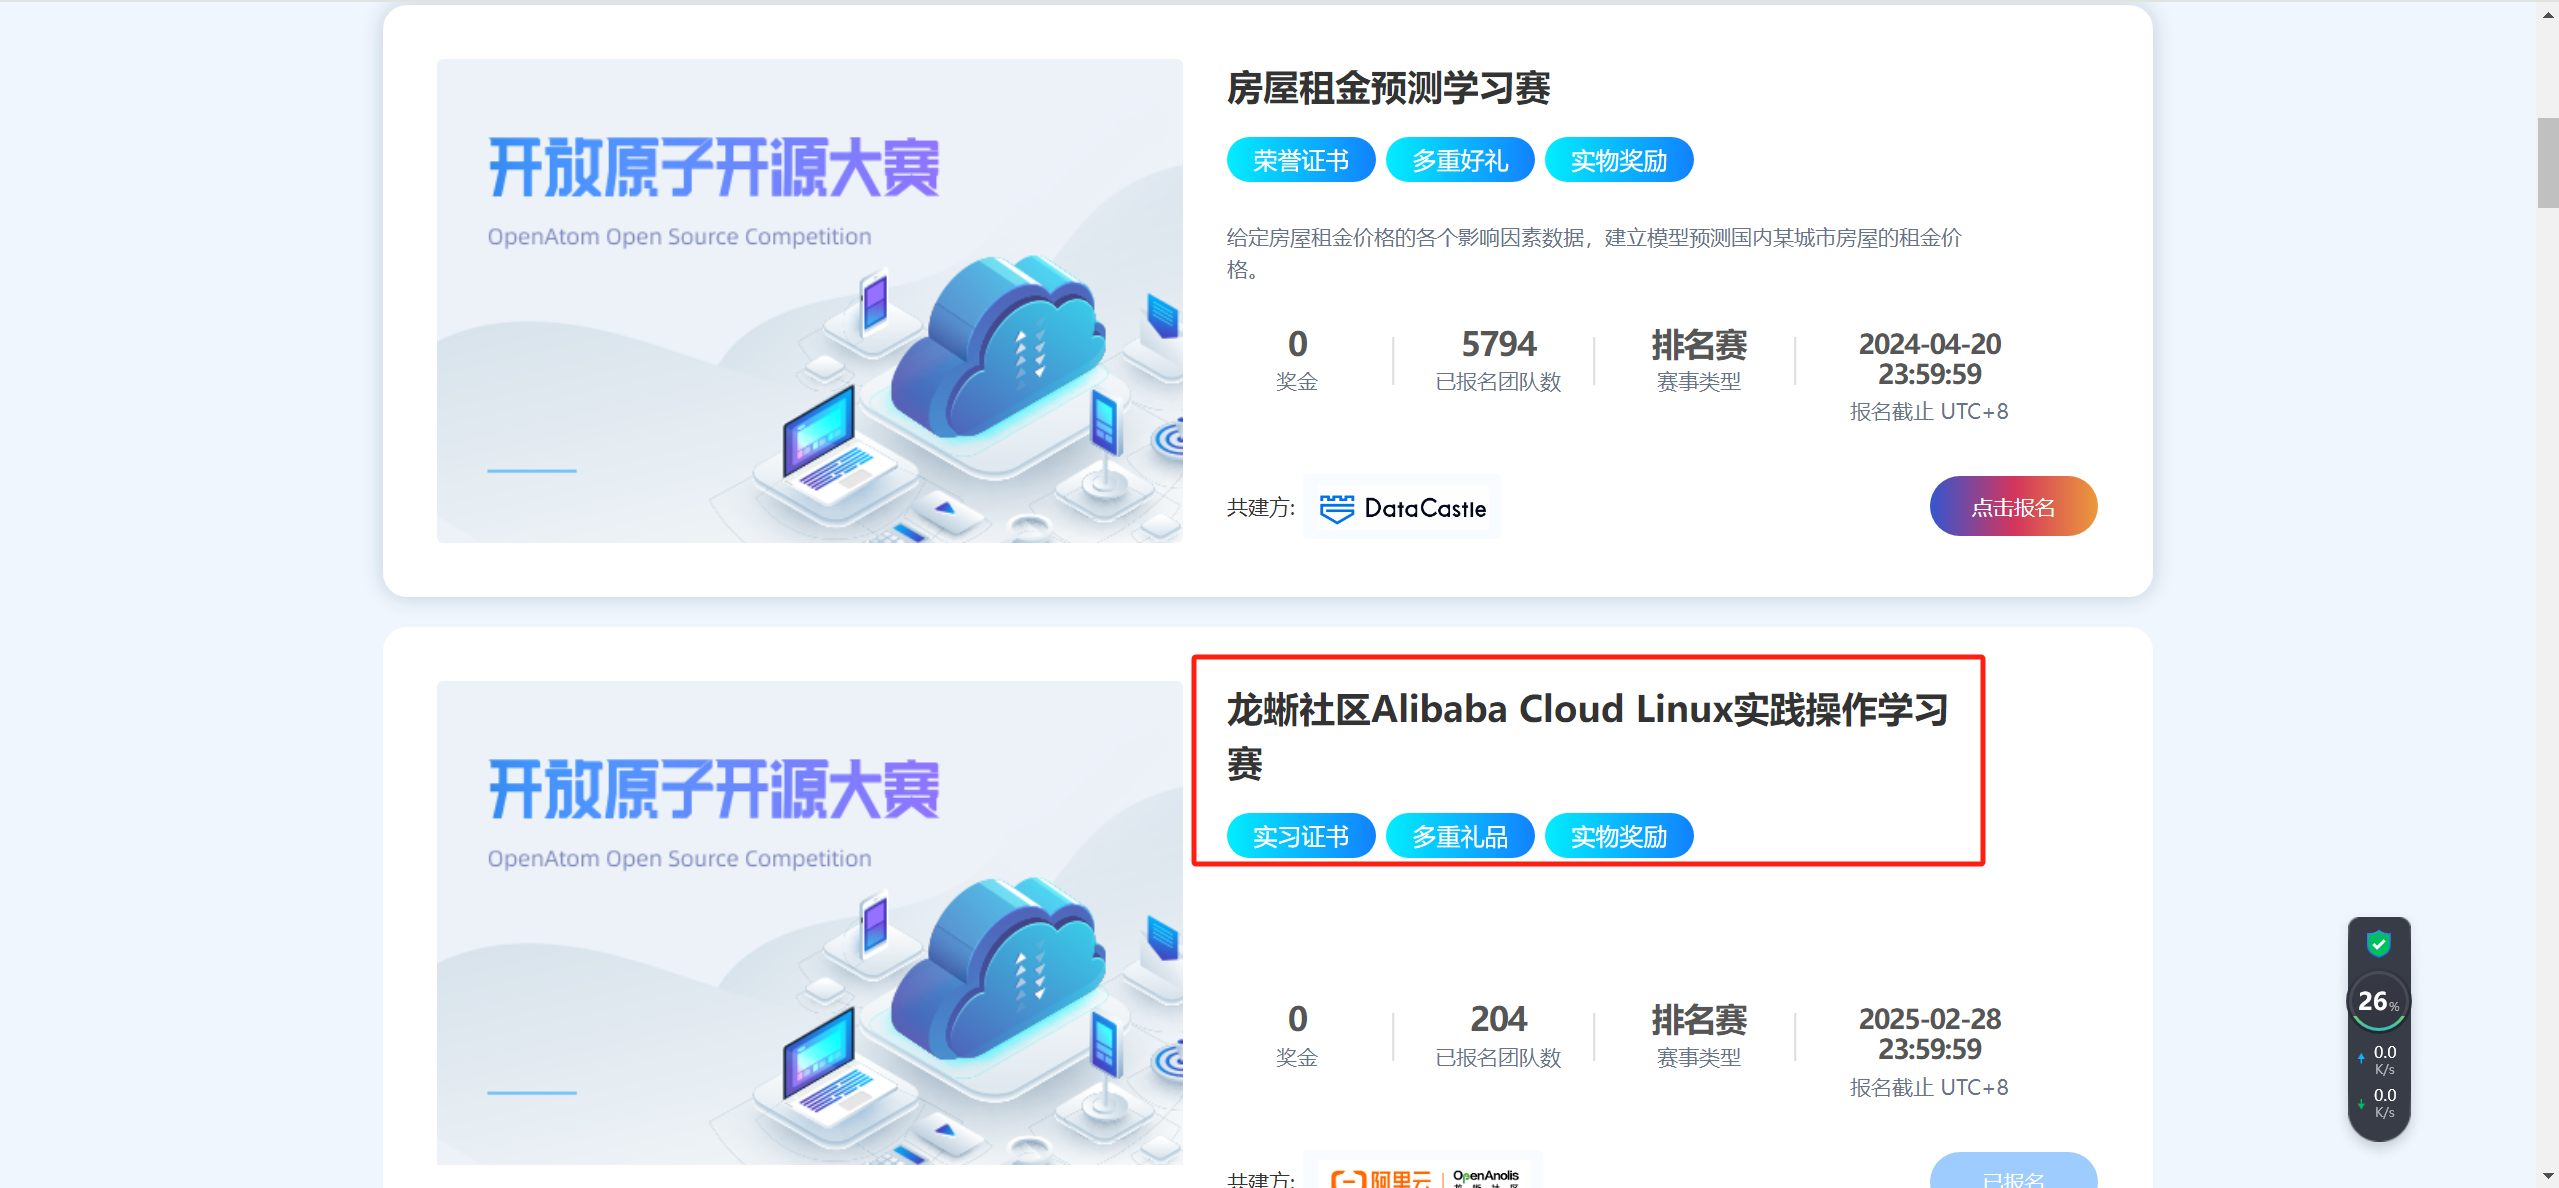 【活动推荐】Alibaba Cloud Linux实践操作学习赛，有电子证书及丰厚奖品！